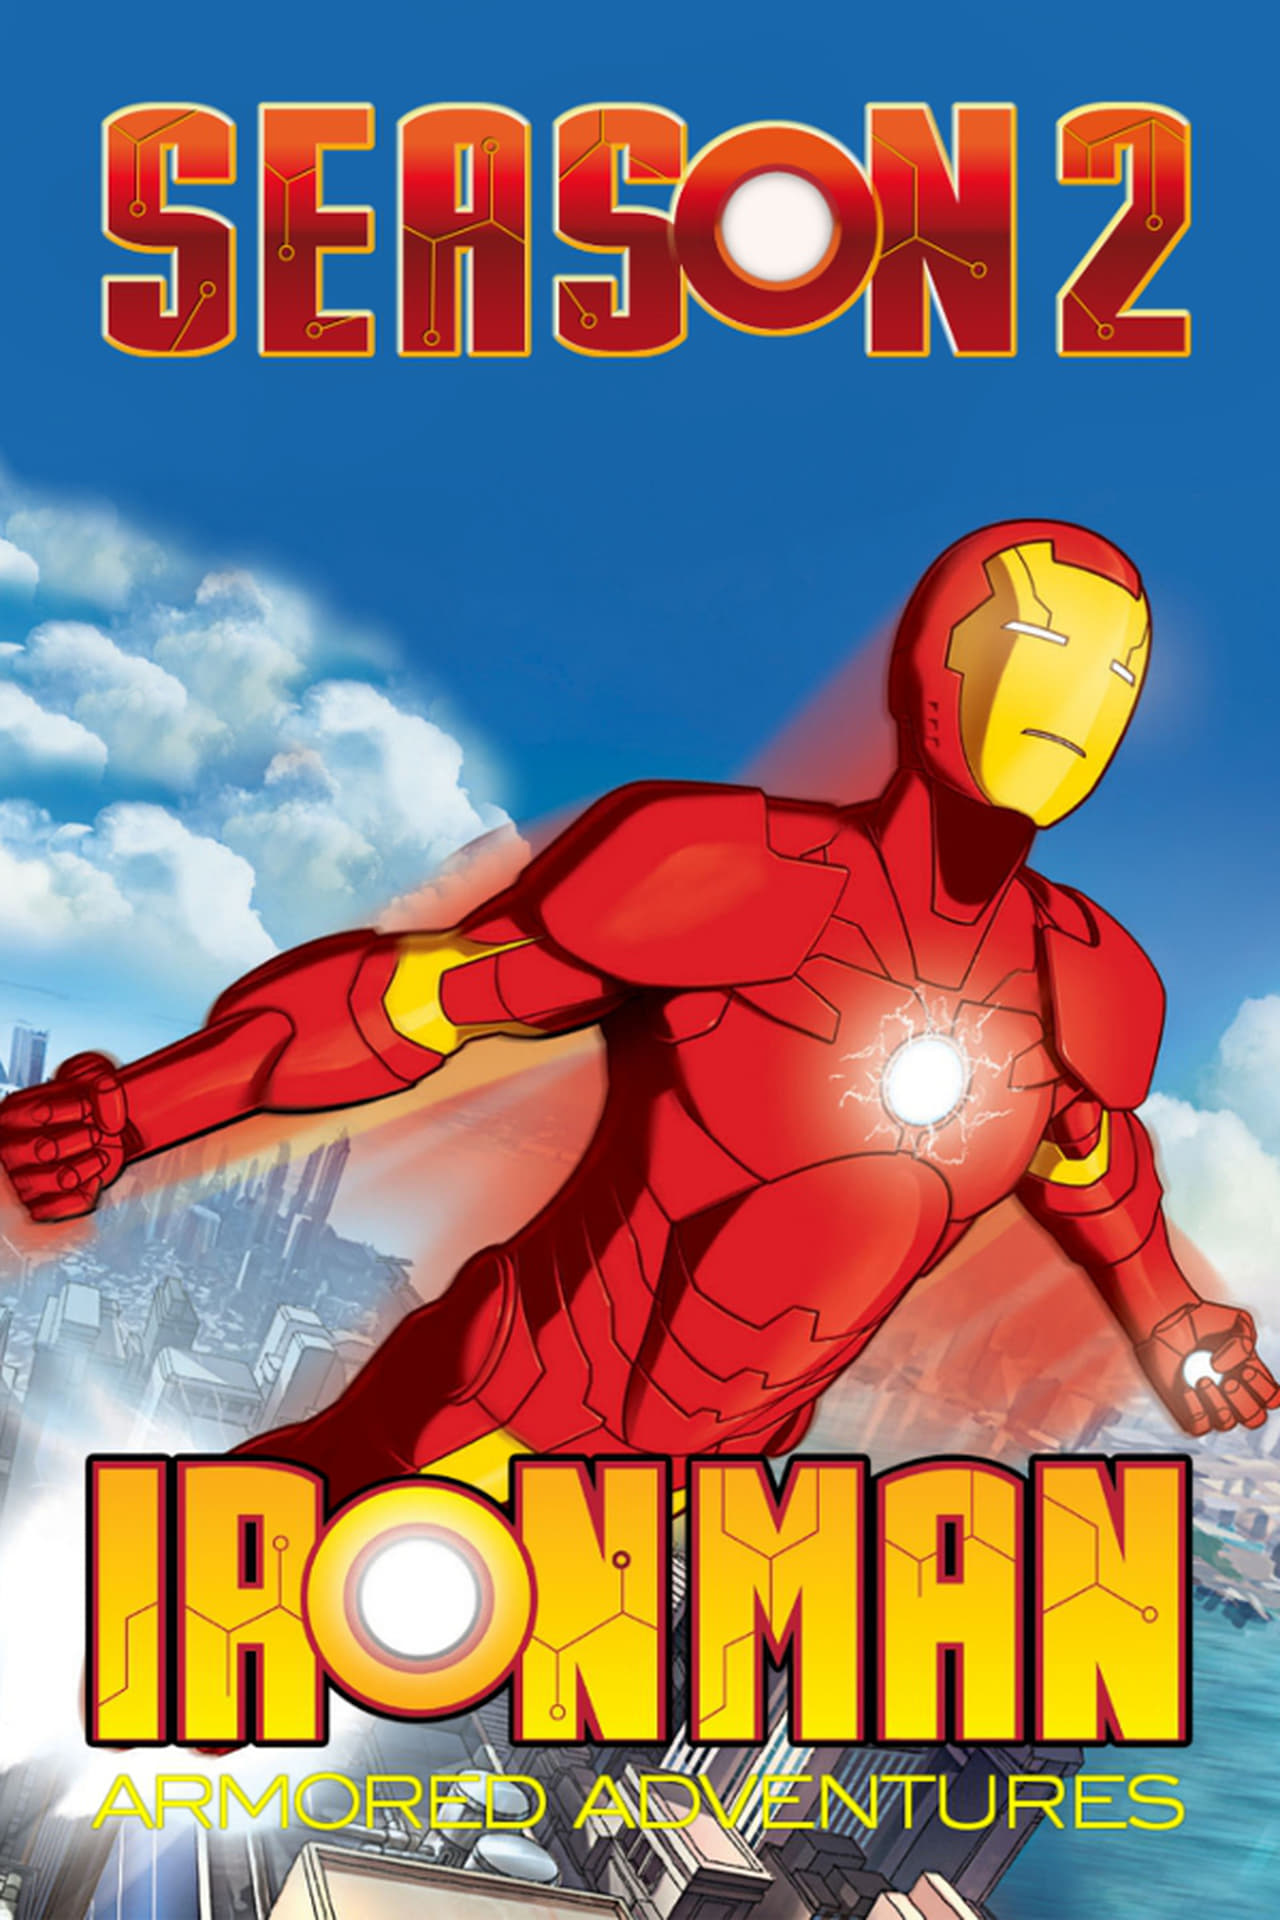 Image Iron Man (Ironman)